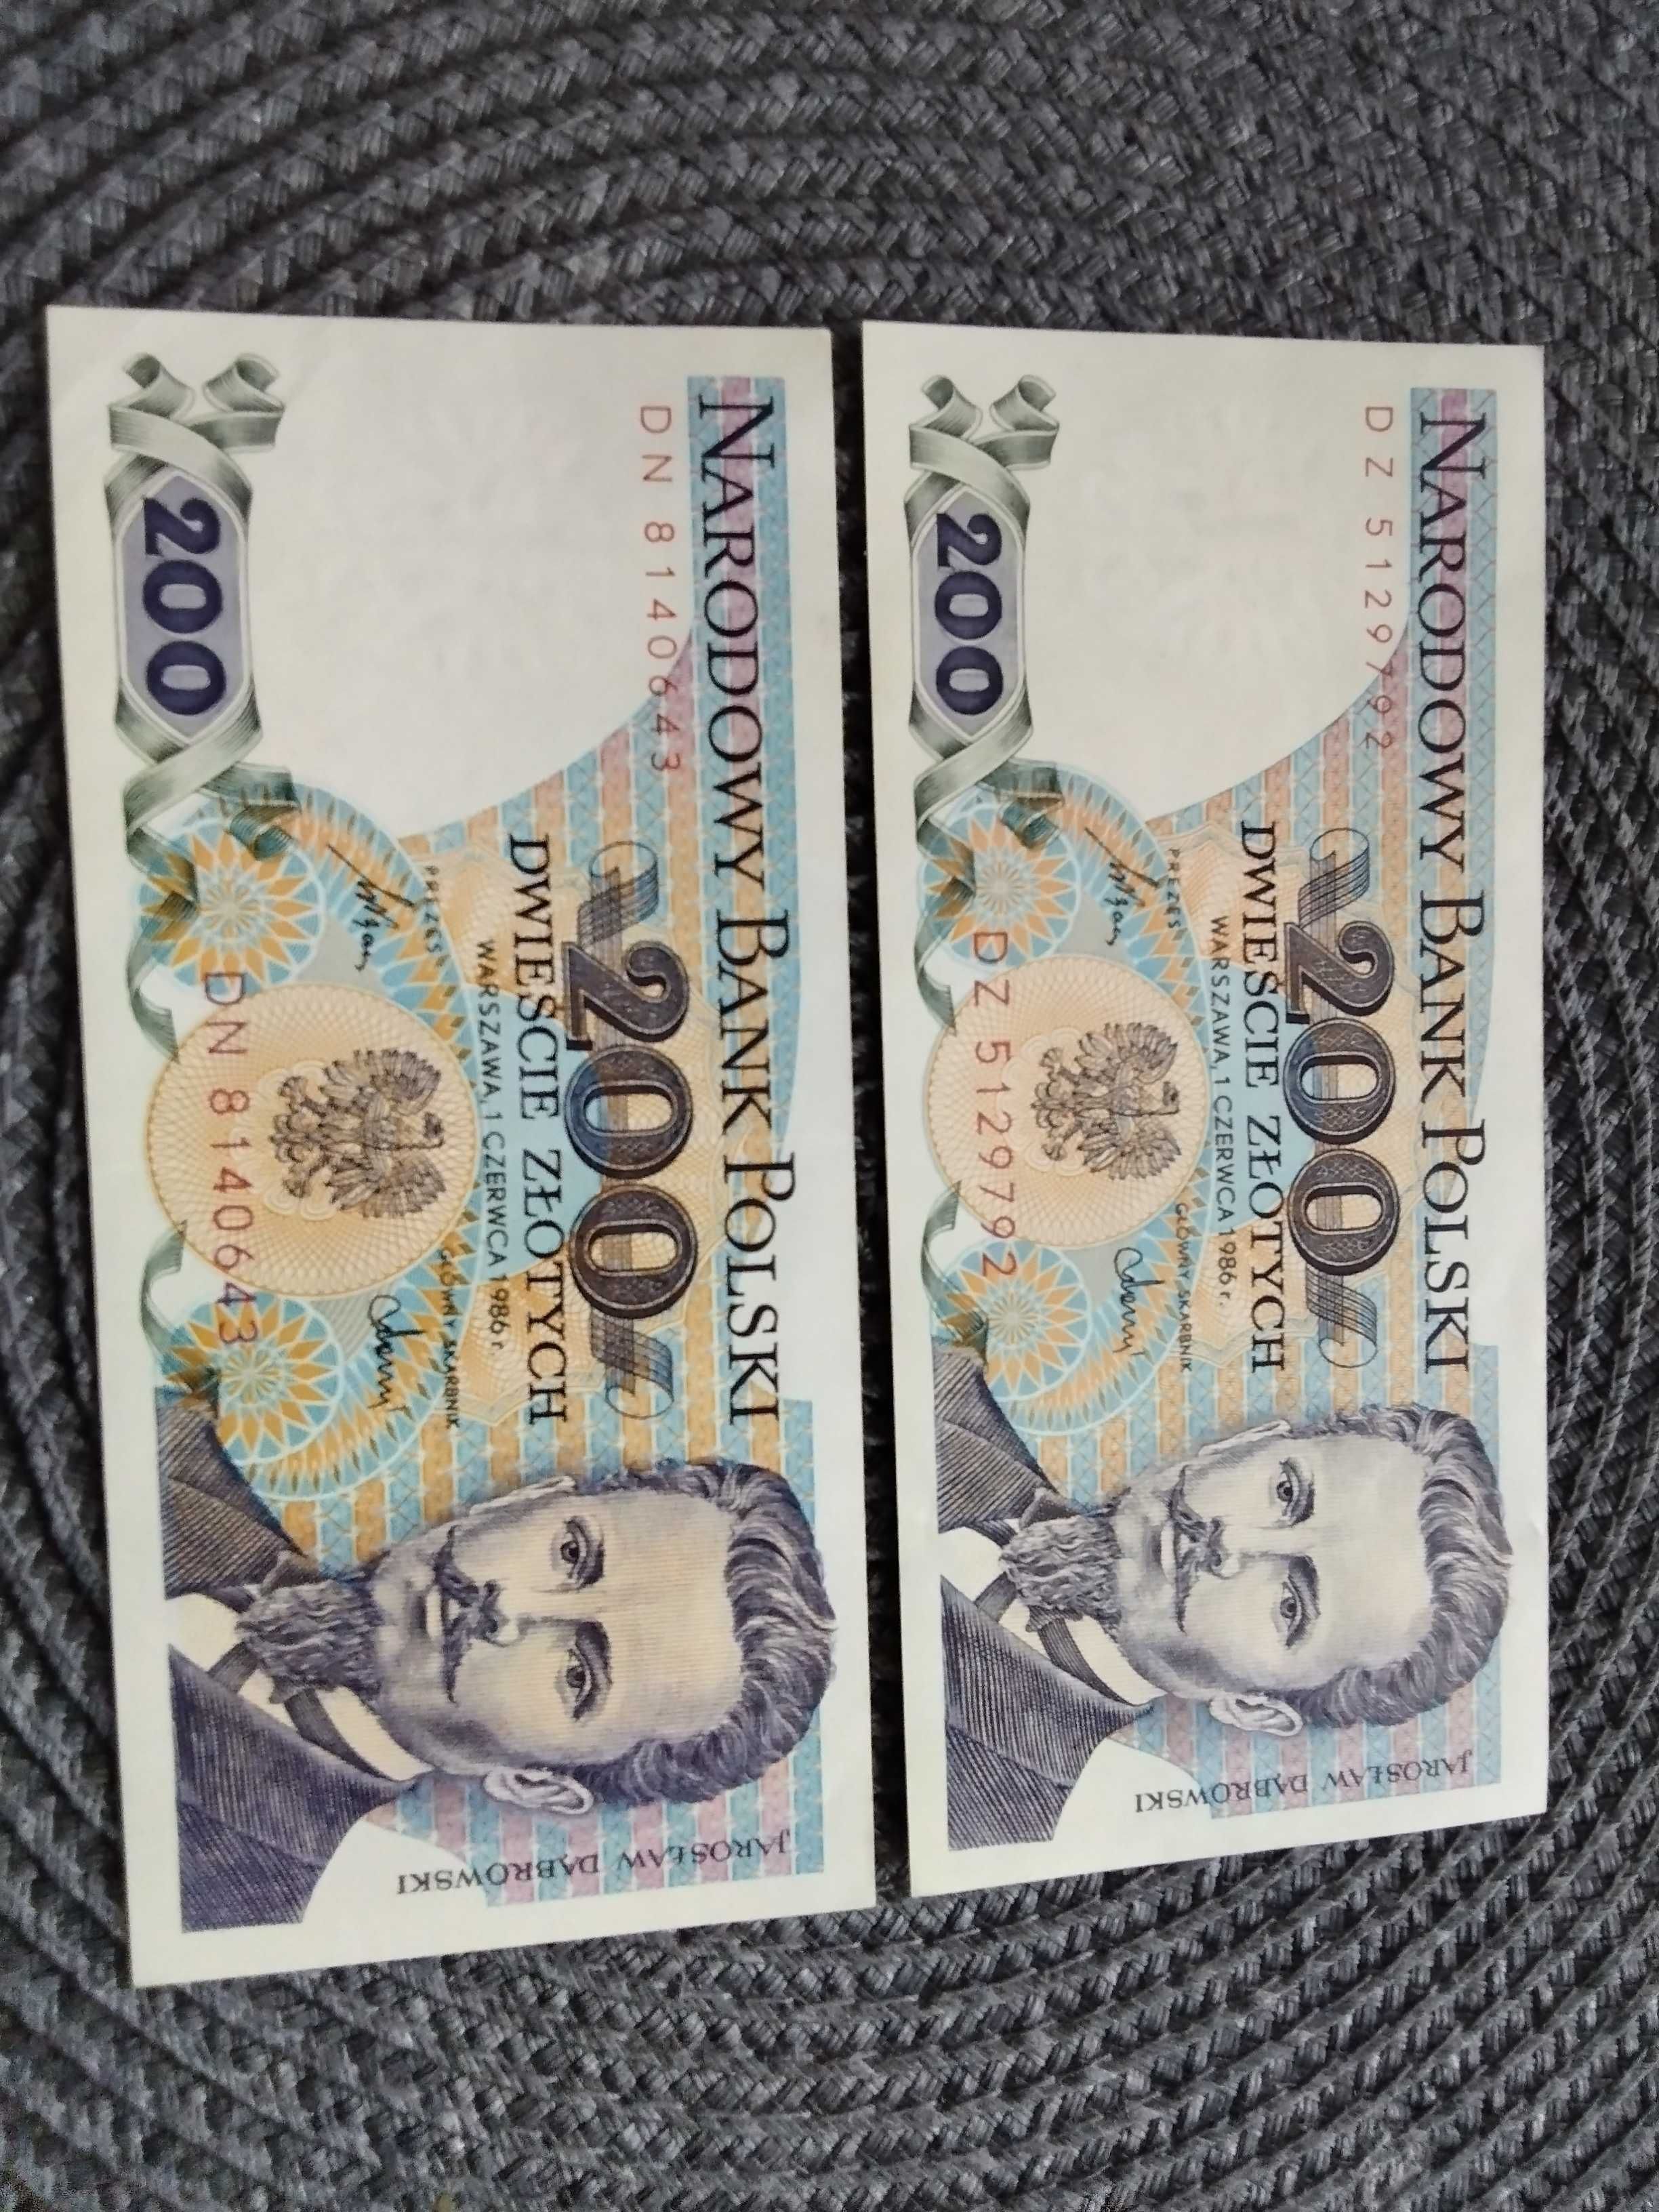 Sprzedam banknoty Narodowego Banku Polskiego